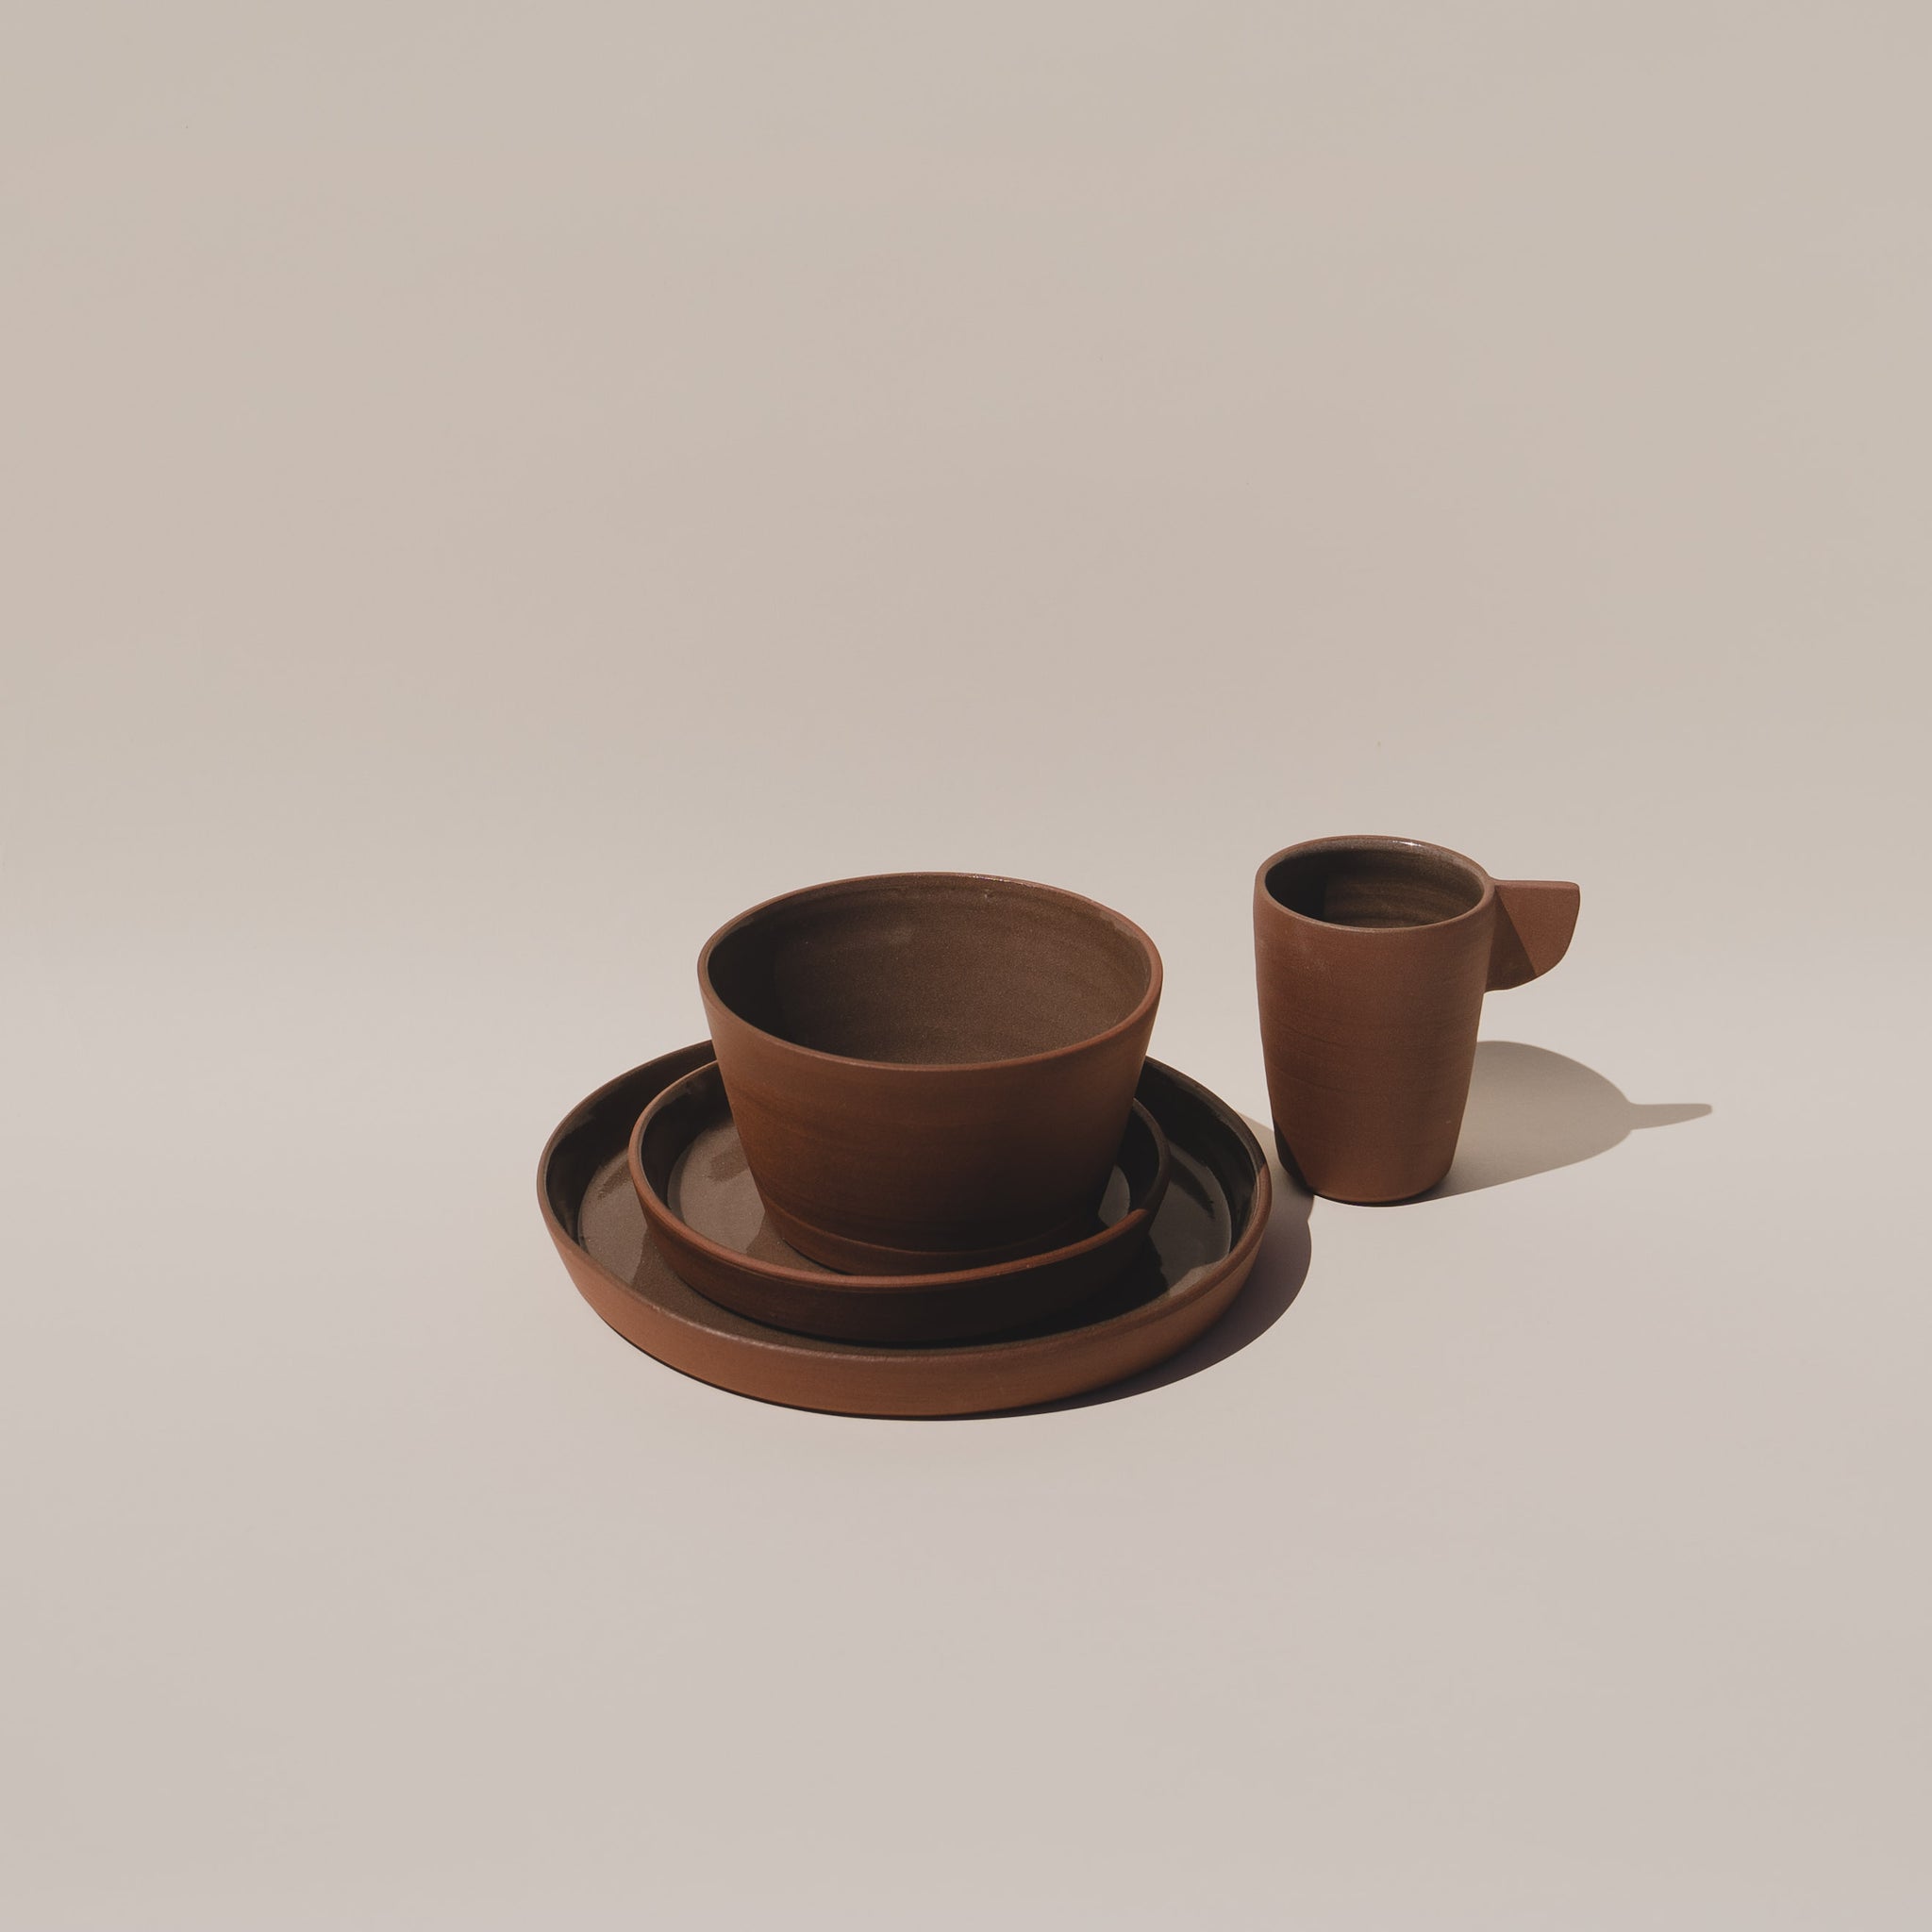 Ceramic plate set with ceramic bowl and ceramic mug in brown terracotta